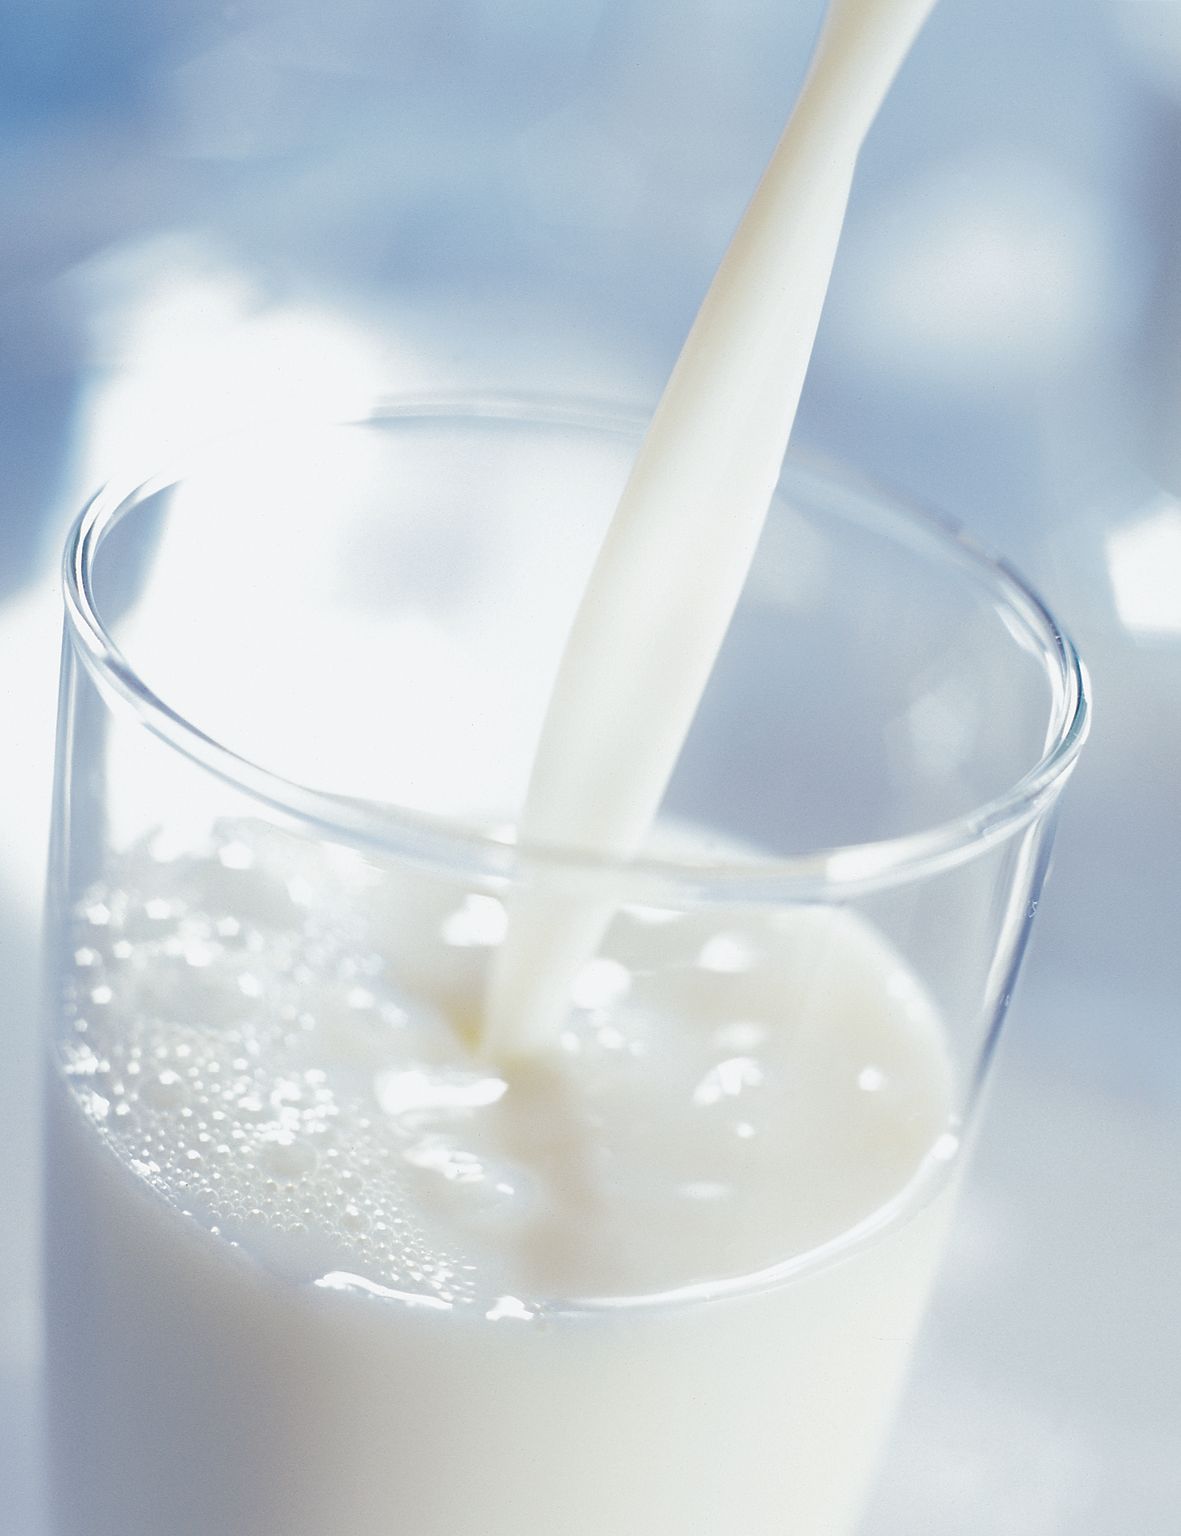 Am 1. Juni ist Weltmilchtag: Milch ist mehr als ein Grundnahrungsmittel